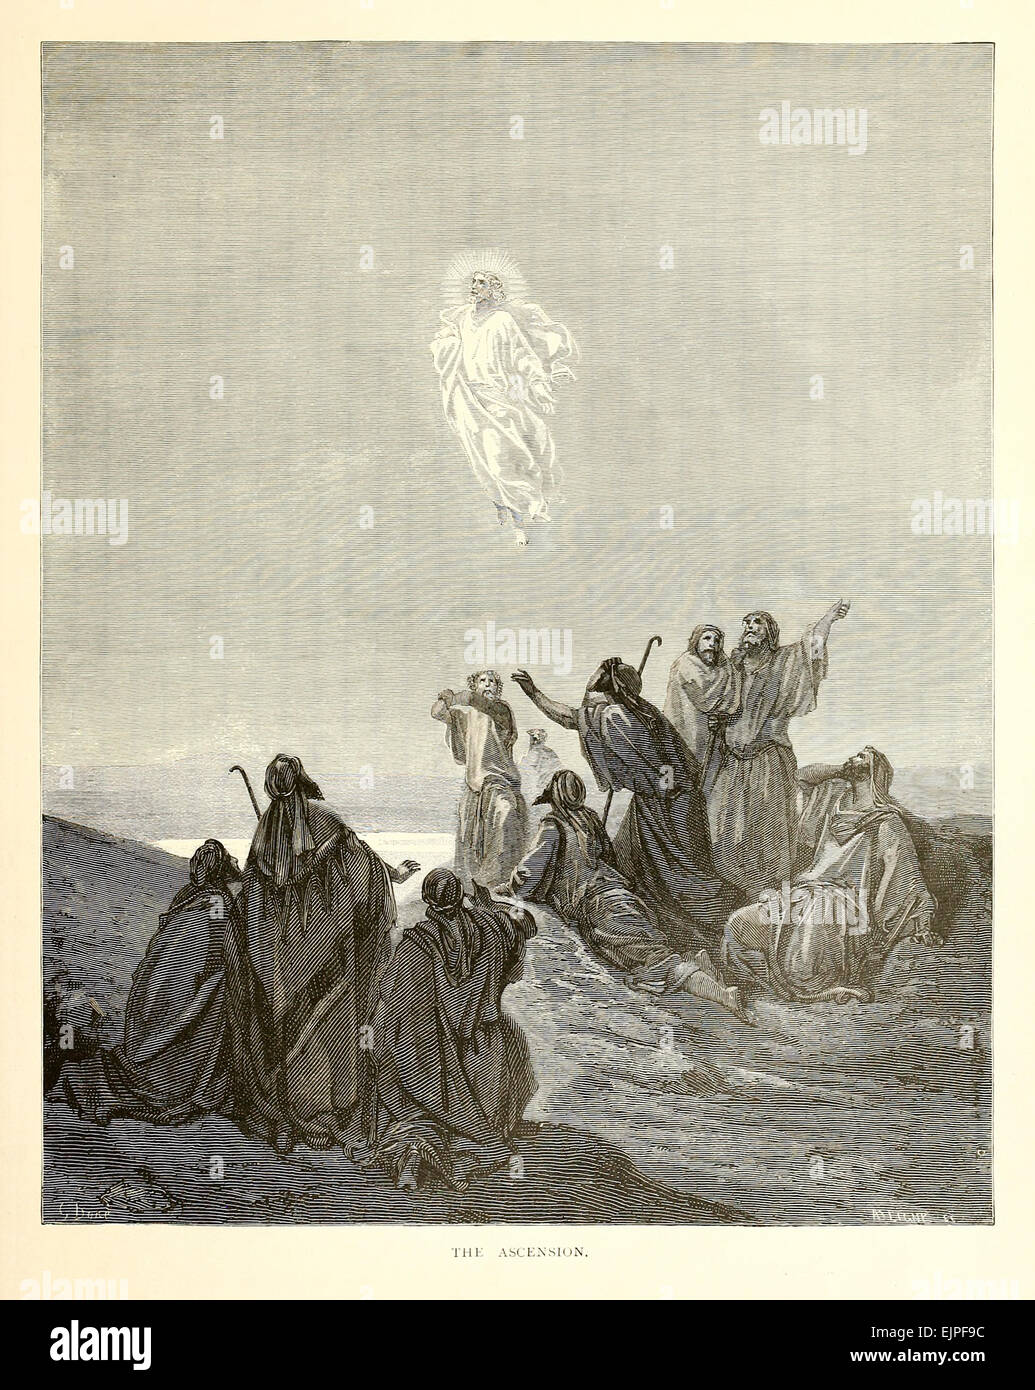 Illustrazione di Paul Gustave Doré (1832-1883) dal 1880 edizione della Bibbia. Vedere la descrizione per maggiori informazioni. Foto Stock